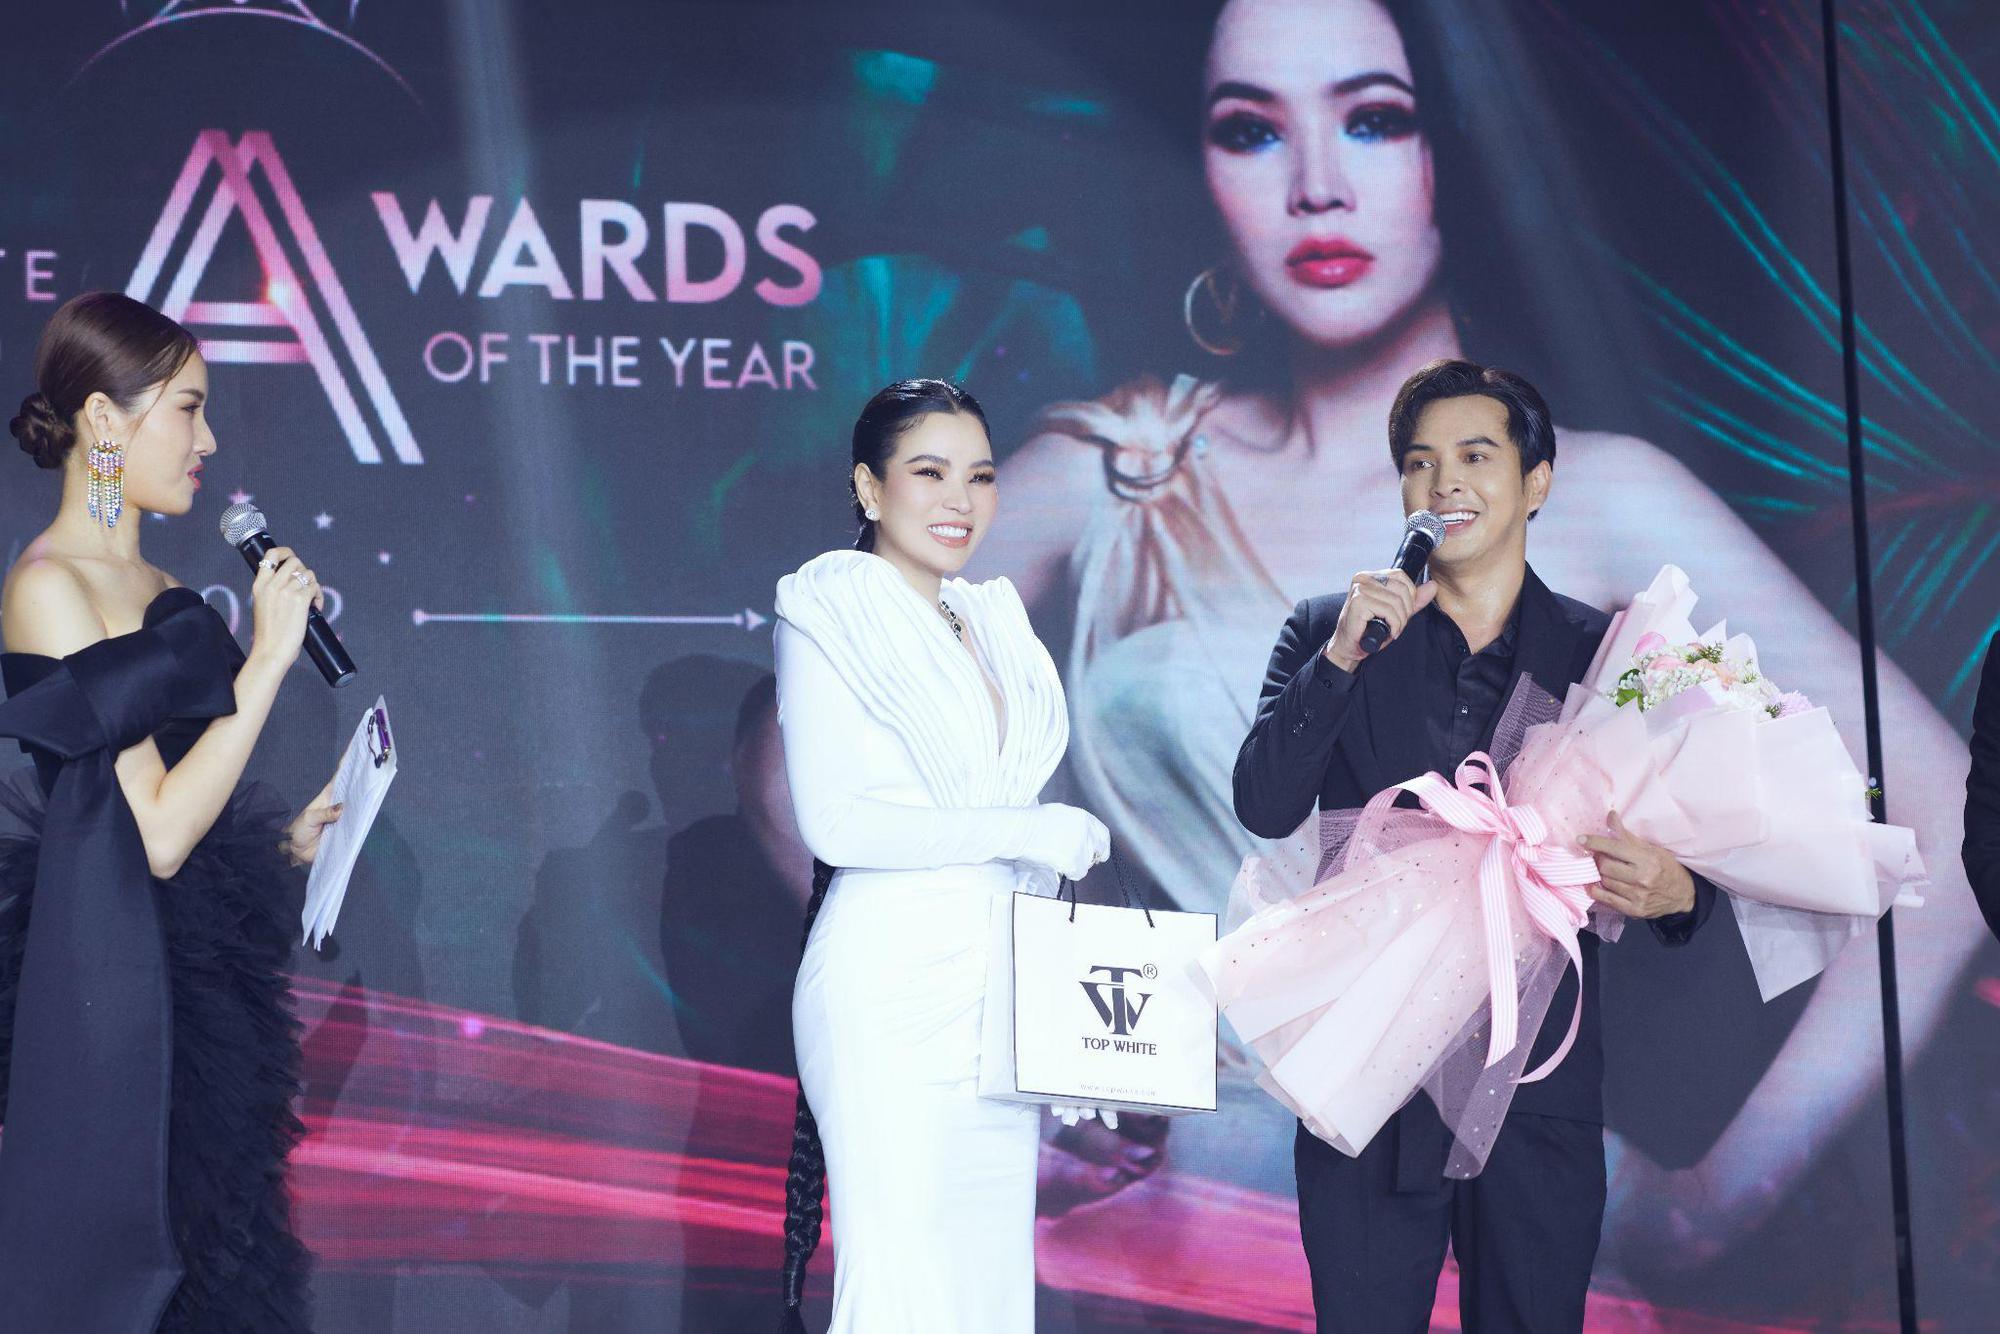 Đông Nhi, Karik, Hồ Quang Hiếu khuấy động đêm tiệc Top White Best Awards Of The Year 2022 - Ảnh 4.